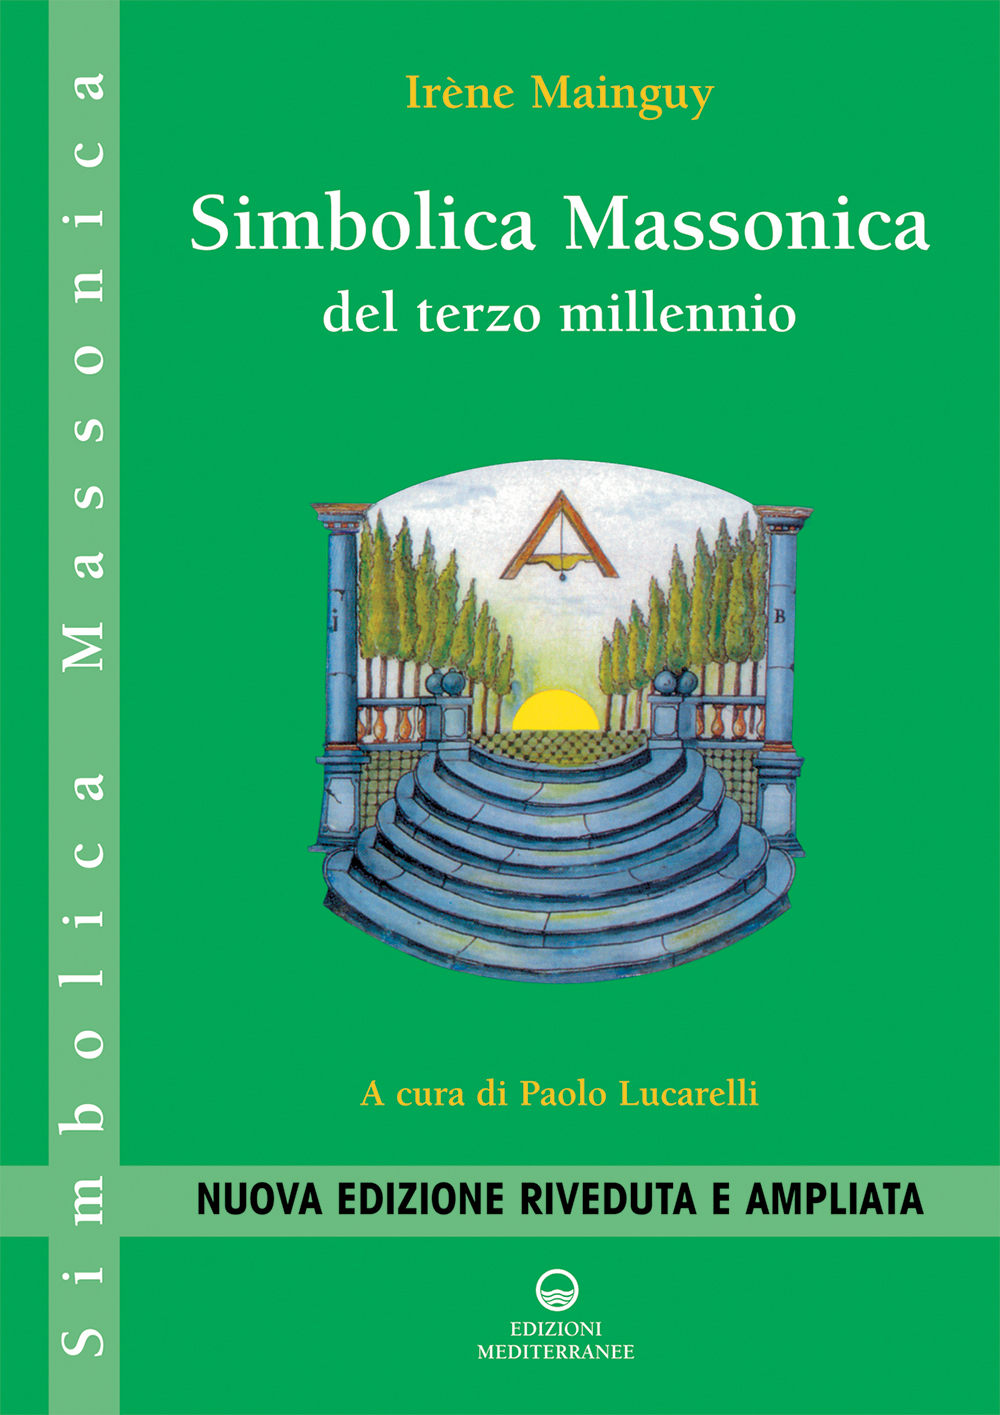 Libri IrEne Mainguy - Simbolica Massonica Del Terzo Millennio NUOVO SIGILLATO, EDIZIONE DEL 27/03/2009 SUBITO DISPONIBILE